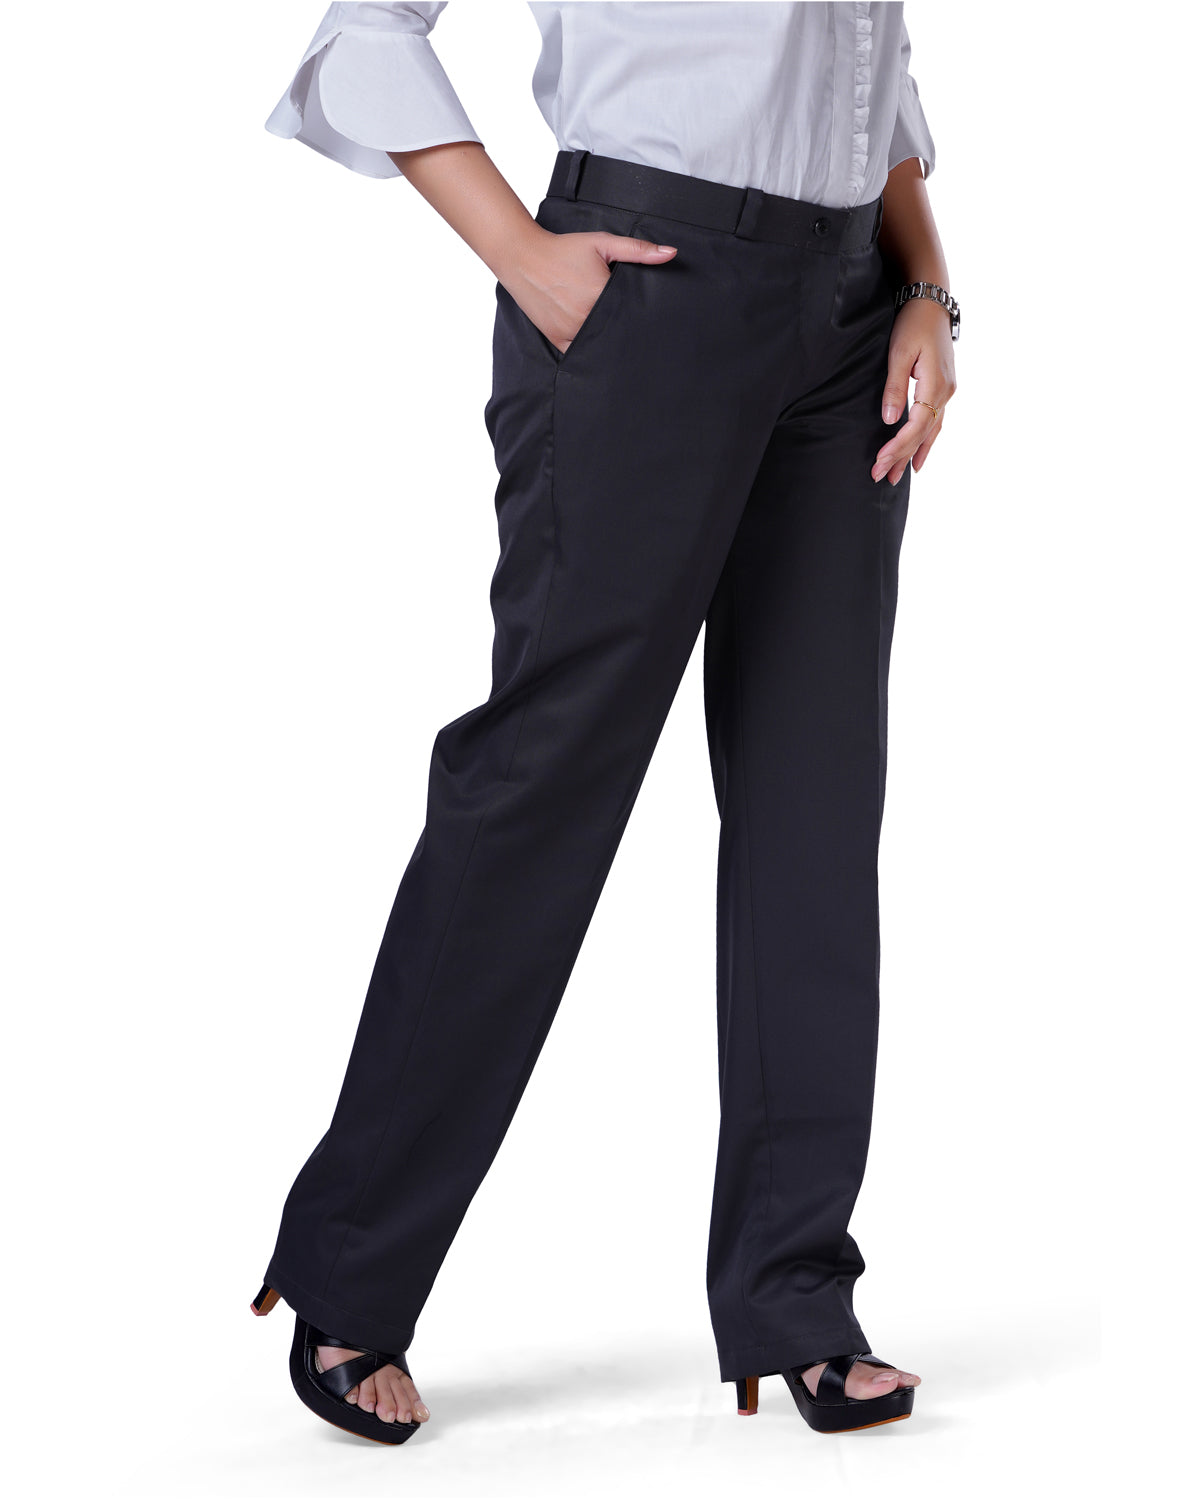 NEIL ALLYN FLAT FRONT WOMEN'S BLACK DRESS PANTS-2227P-01